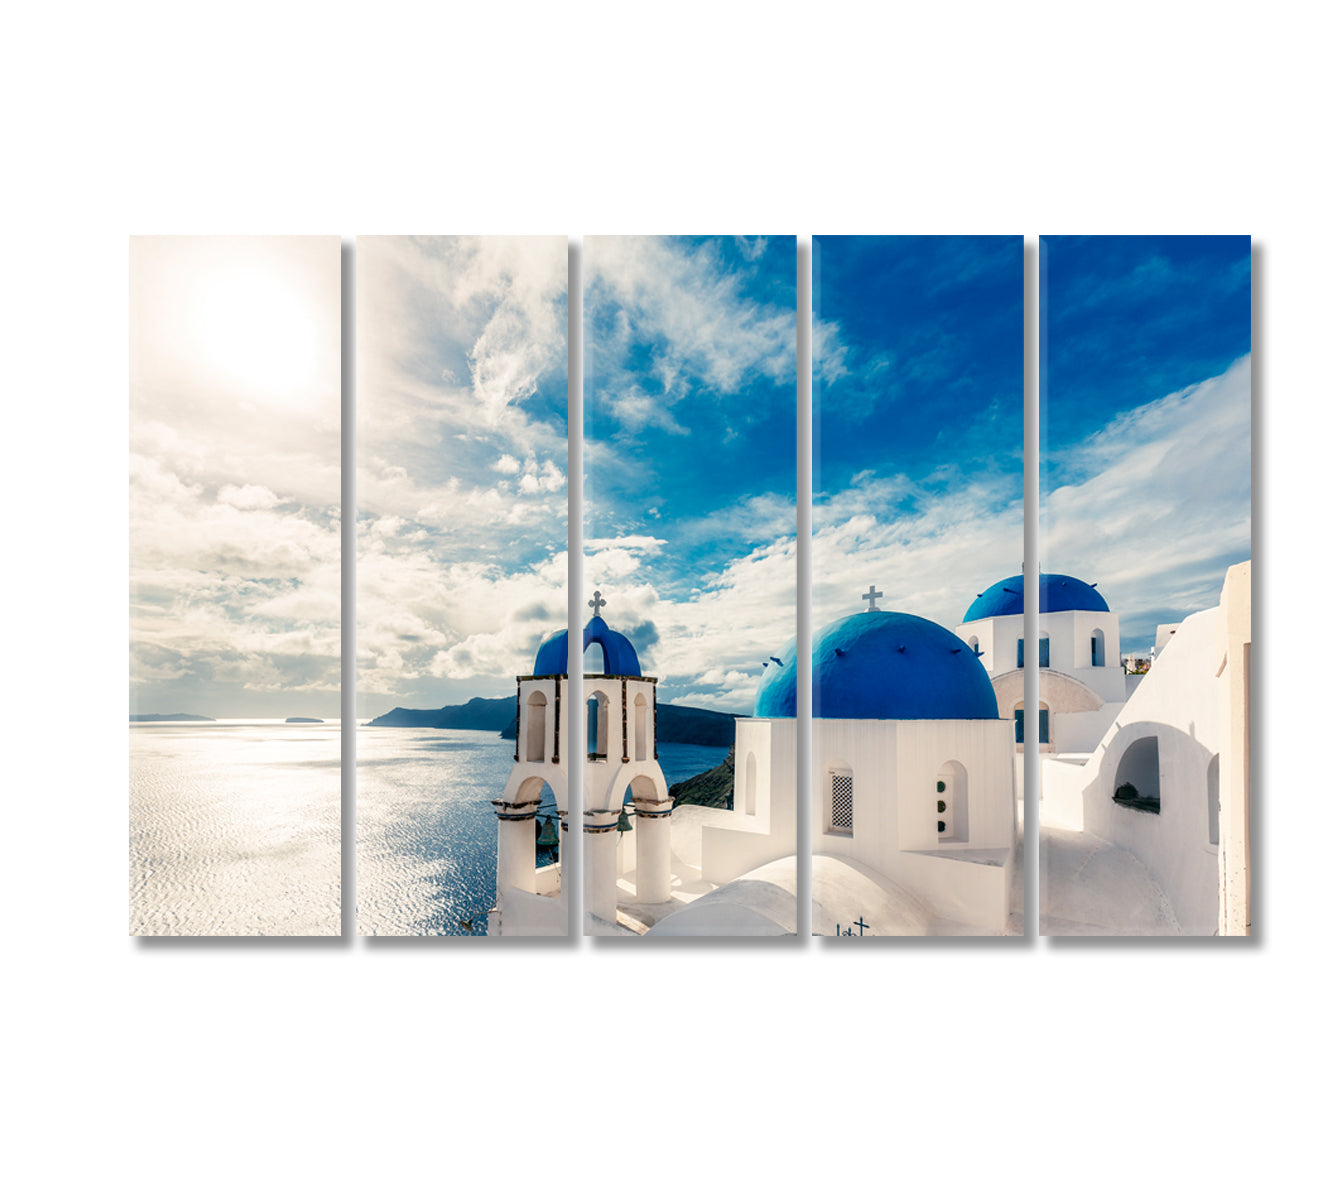 Churches in Oia Santorini Island Greece Canvas Print-Canvas Print-CetArt-5 Panels-36x24 inches-CetArt